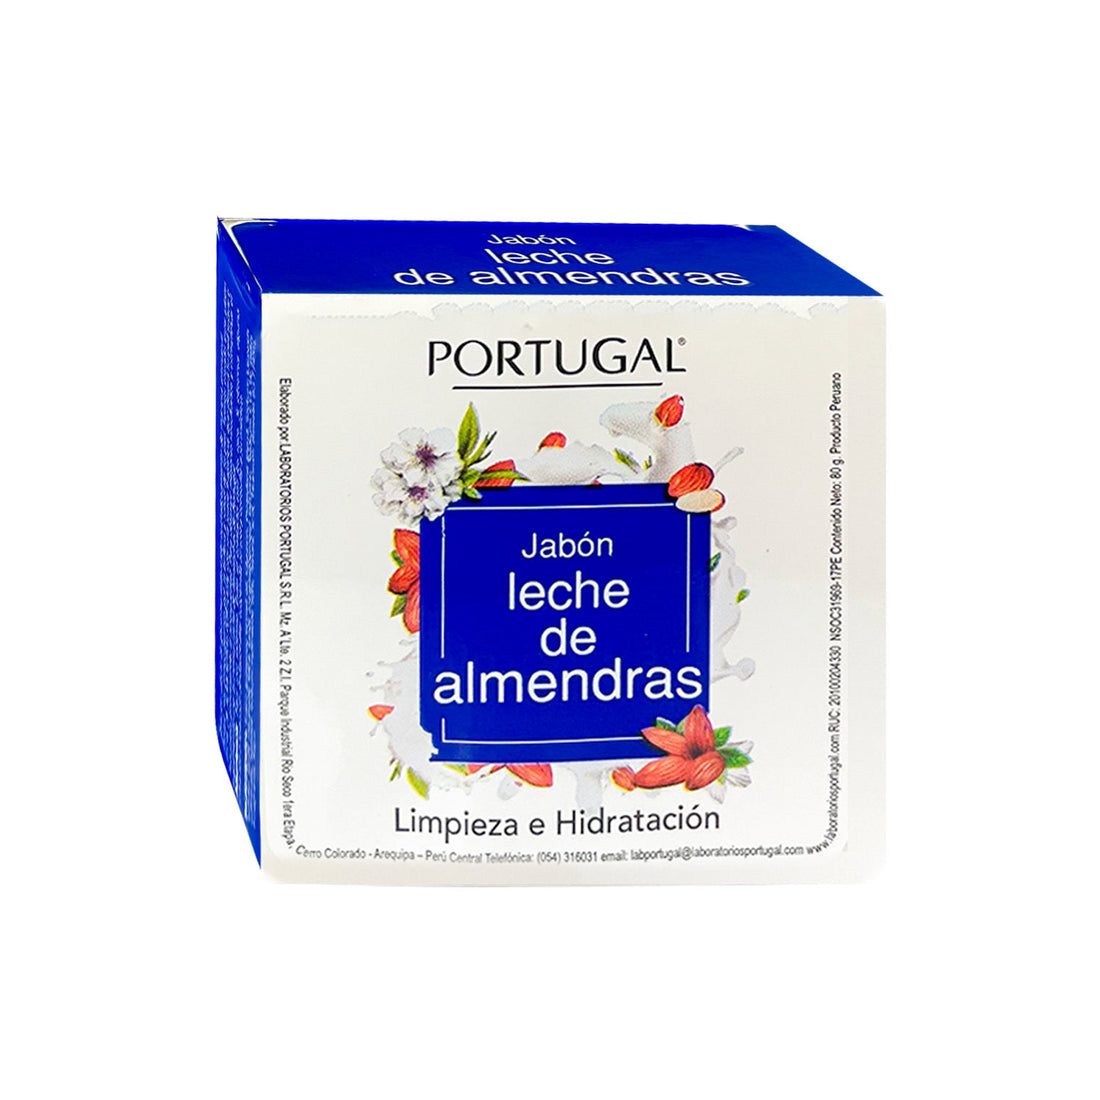 Jabon leche de almendras 80g – Portugal